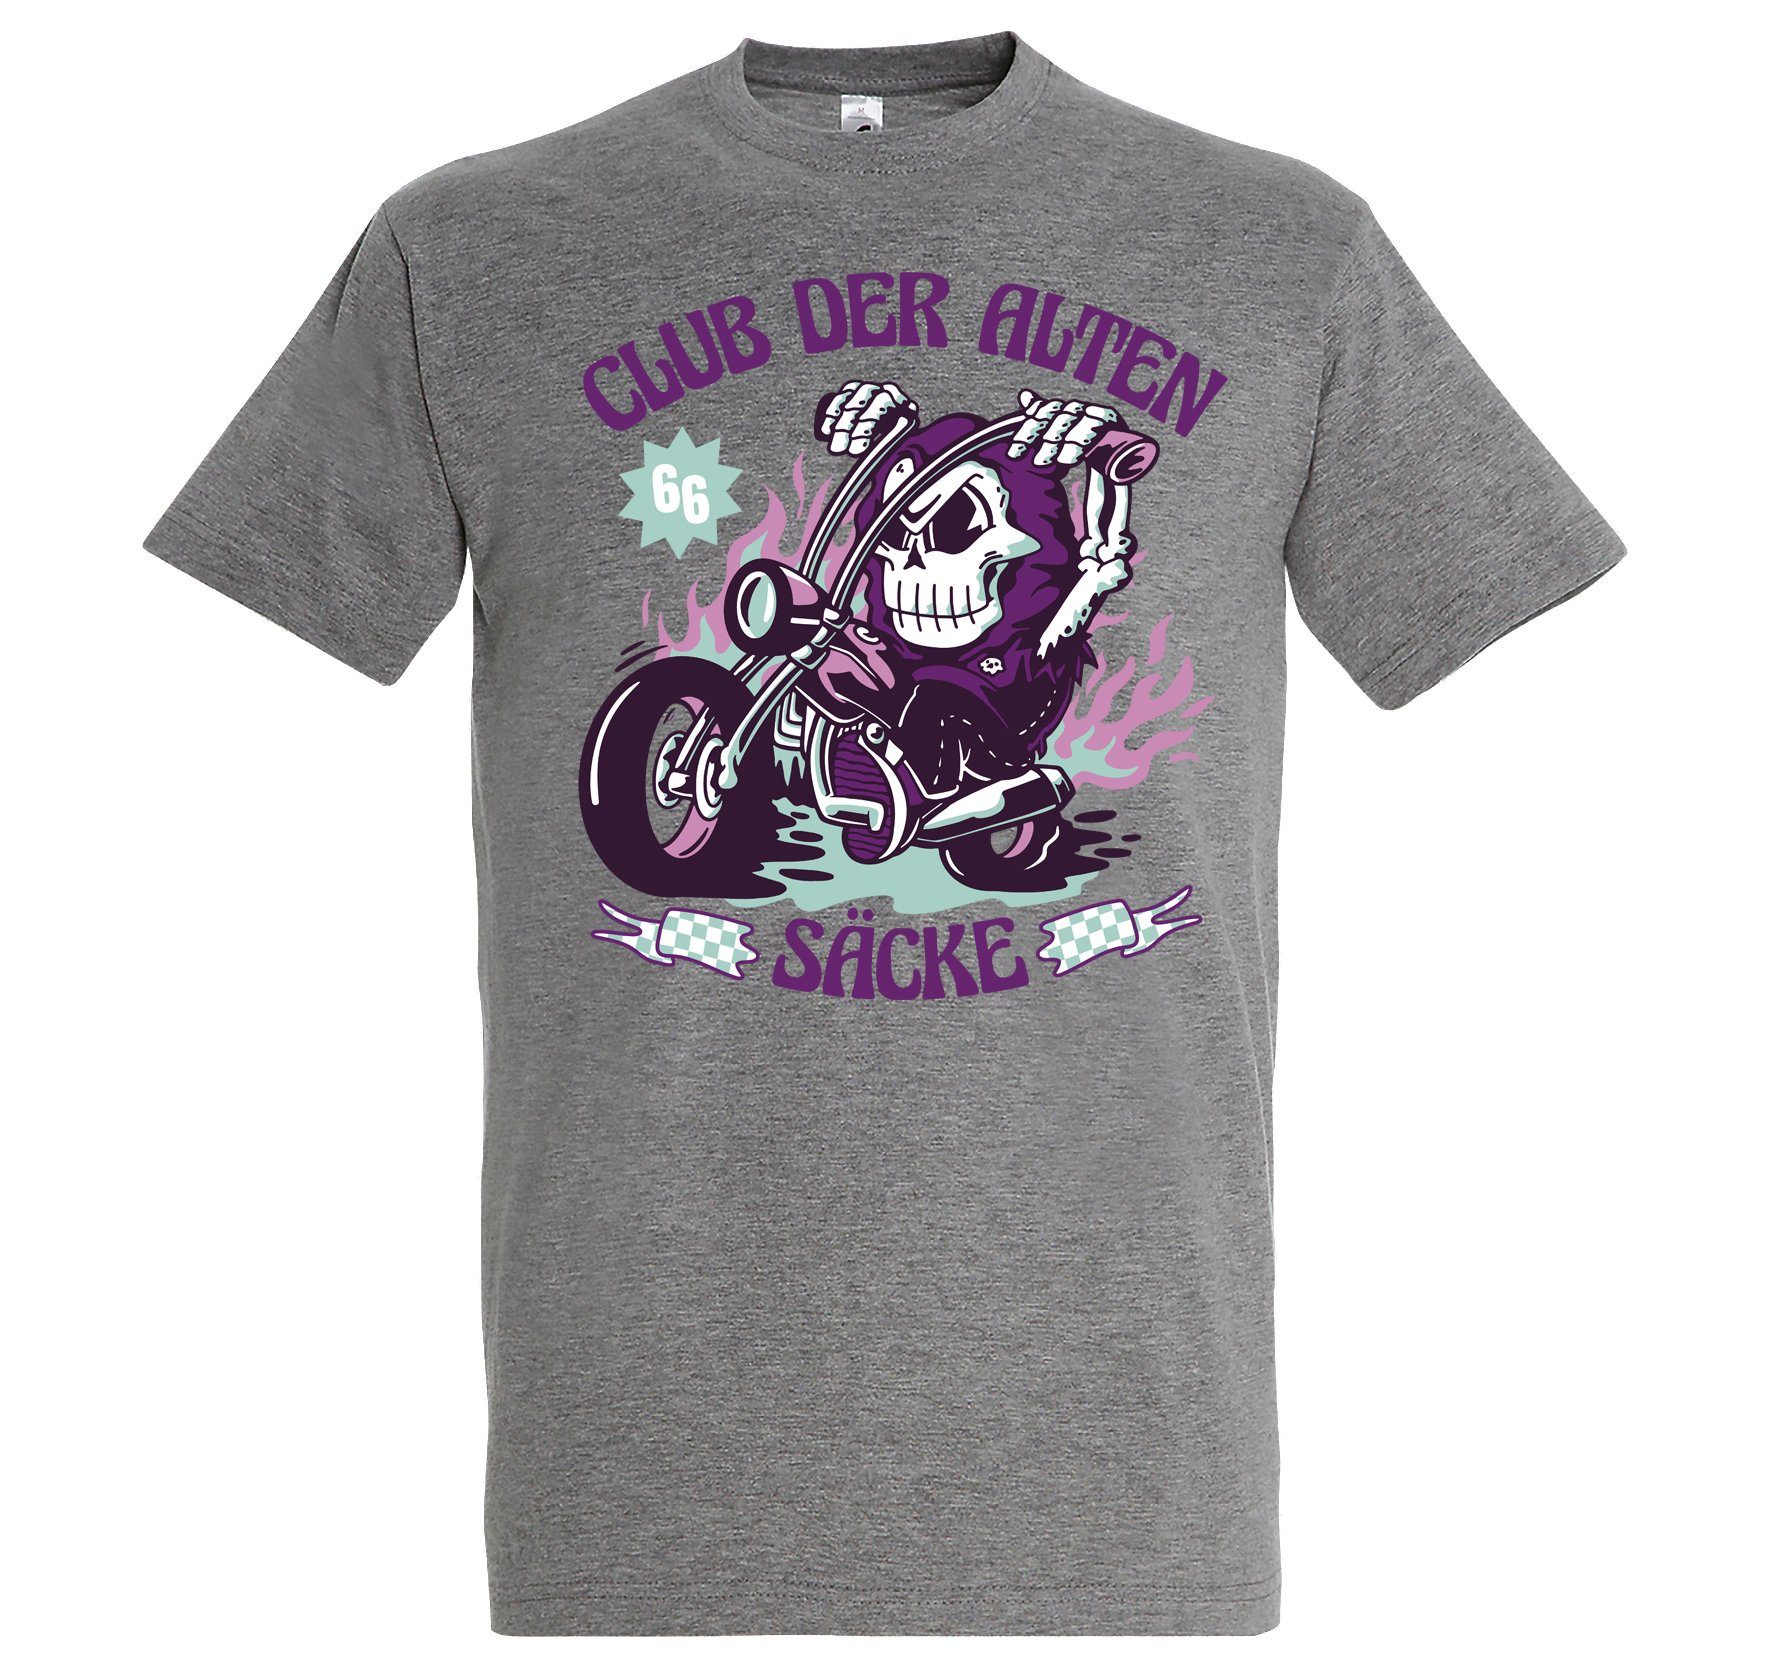 Youth Designz T-Shirt Biker Club Säcke Shirt Der mit Alten Grau Frontprint Herren lustigem